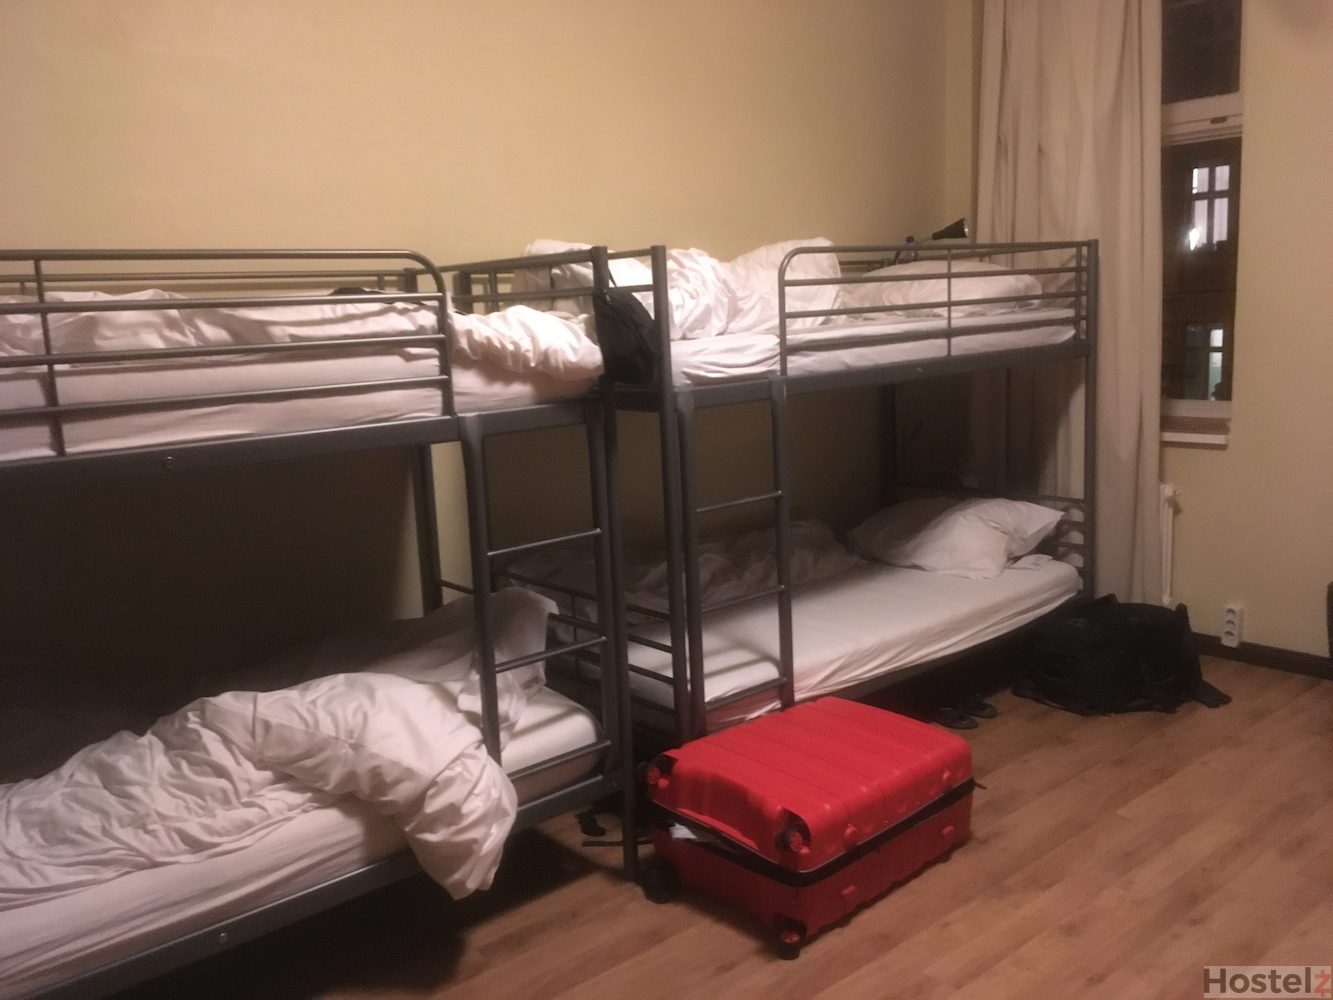 6 bed mixed dorm